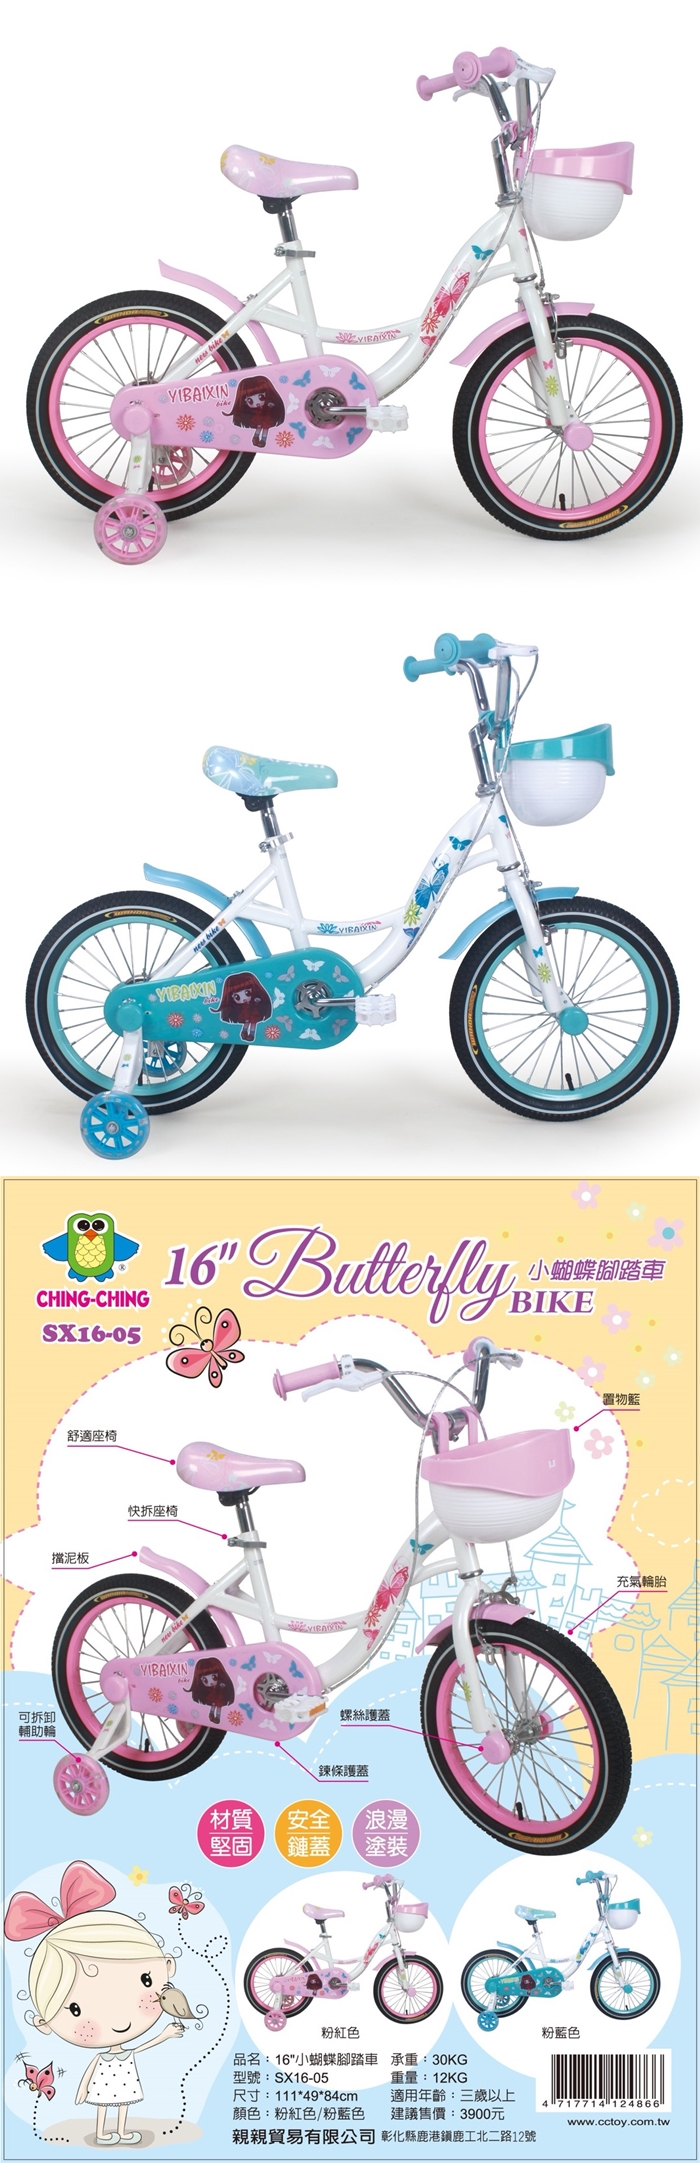 CHING-CHING親親-16吋小蝴蝶腳踏車(粉紅色/粉藍色)SX16-05